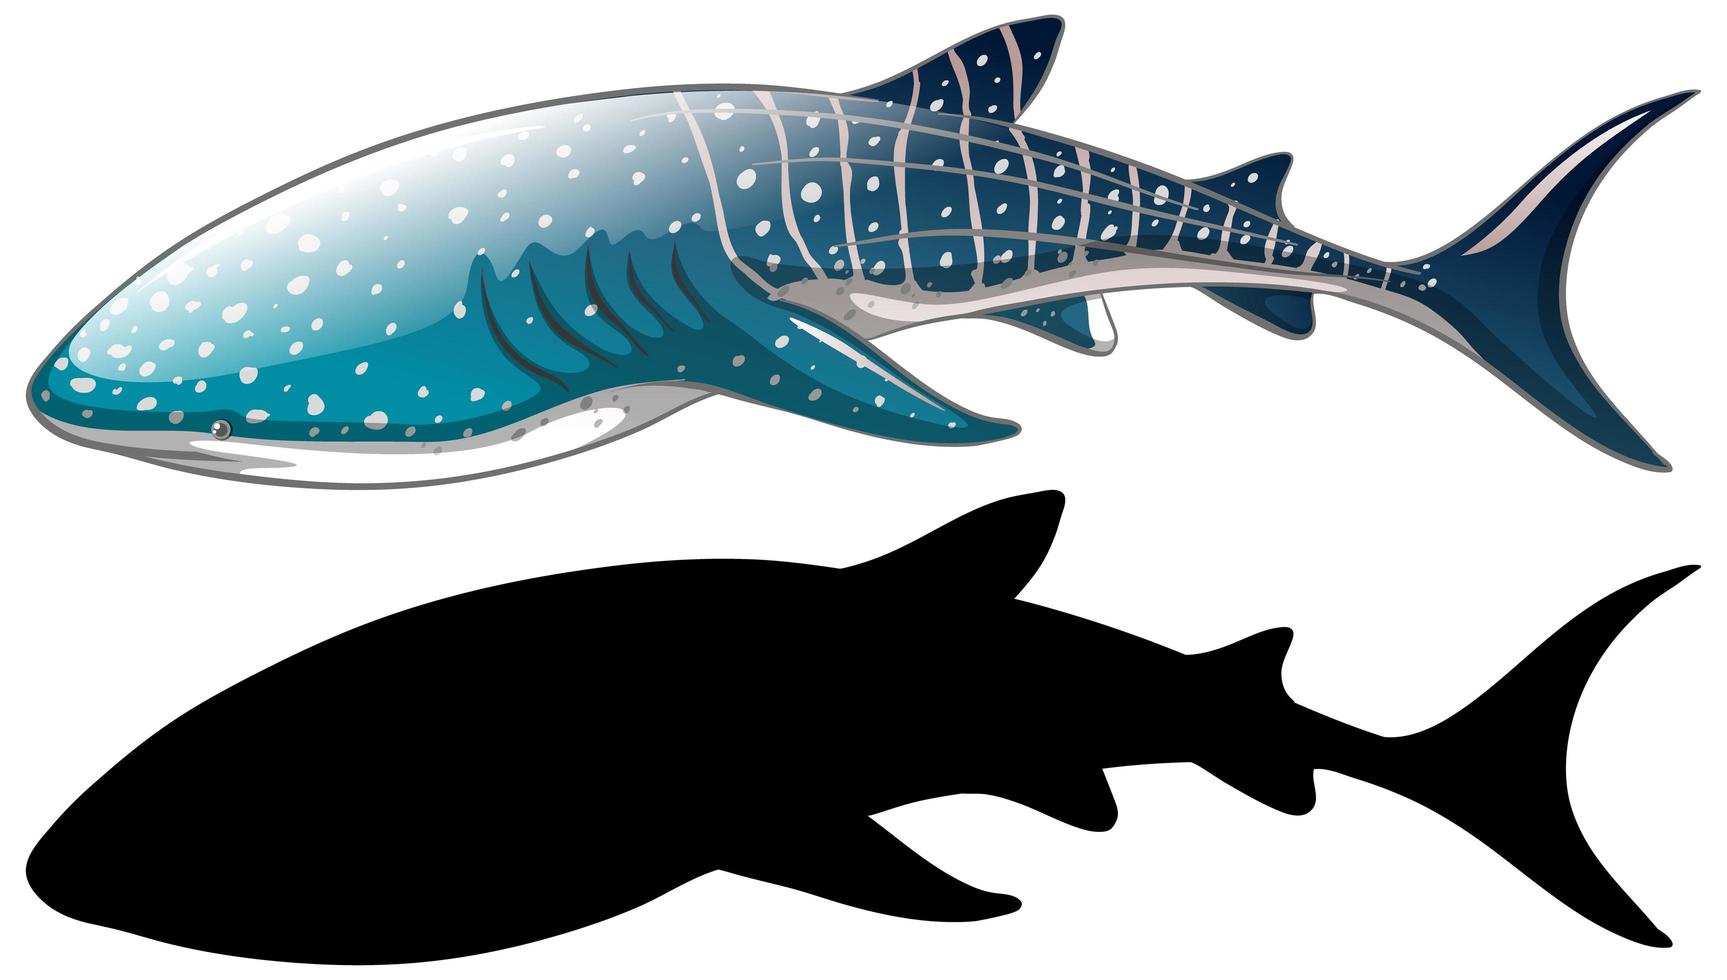 walvishaai karakters en zijn silhouet op witte achtergrond vector